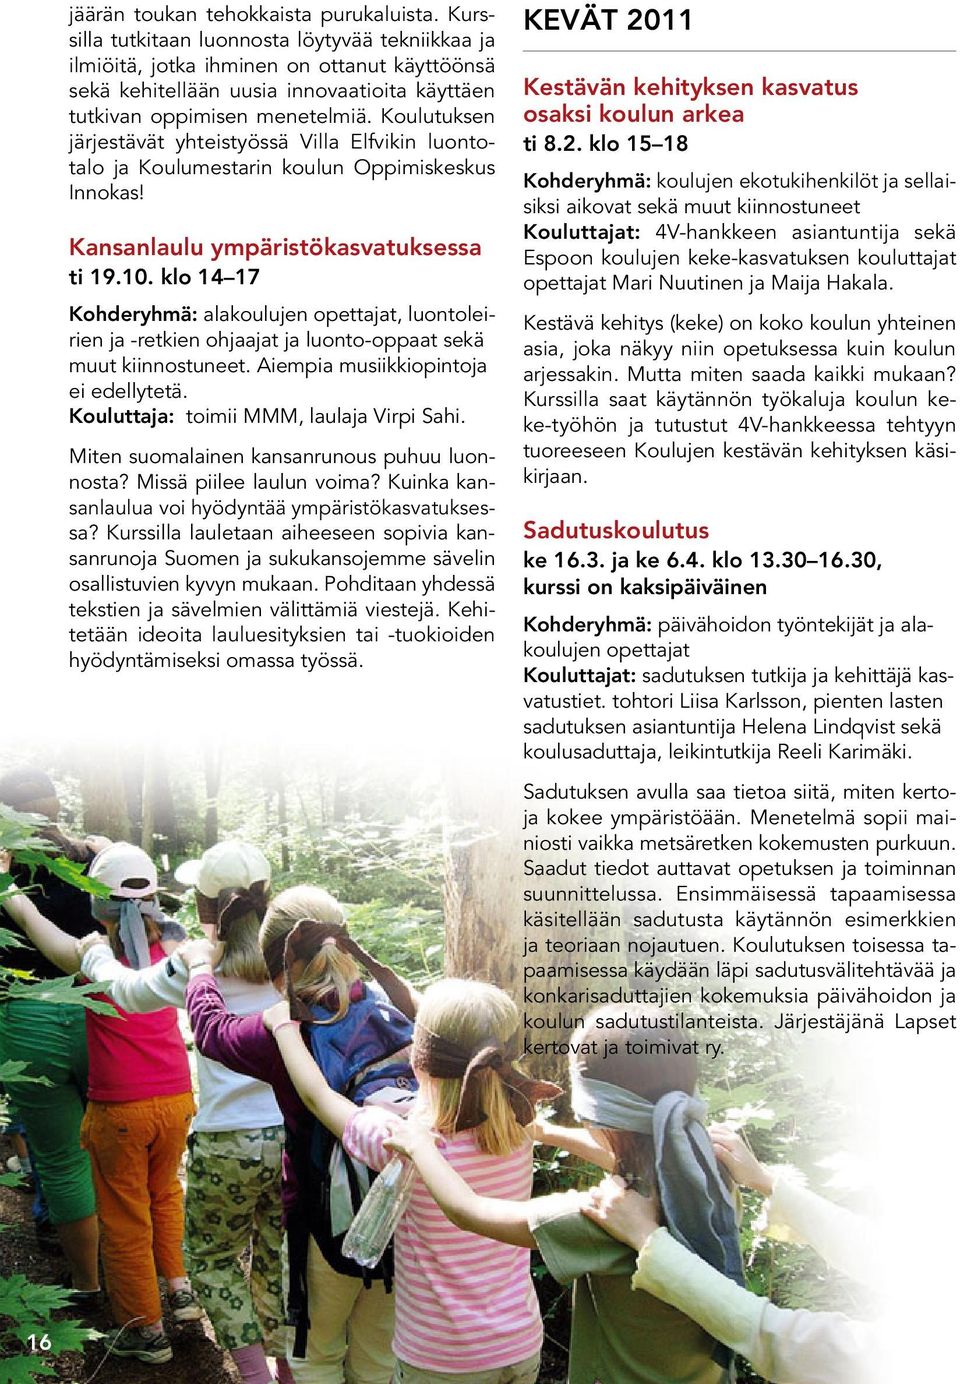 Koulutuksen järjestävät yhteistyössä Villa Elfvikin luontotalo ja Koulumestarin koulun Oppimiskeskus Innokas! Kansanlaulu ympäristökasvatuksessa ti 19.10.